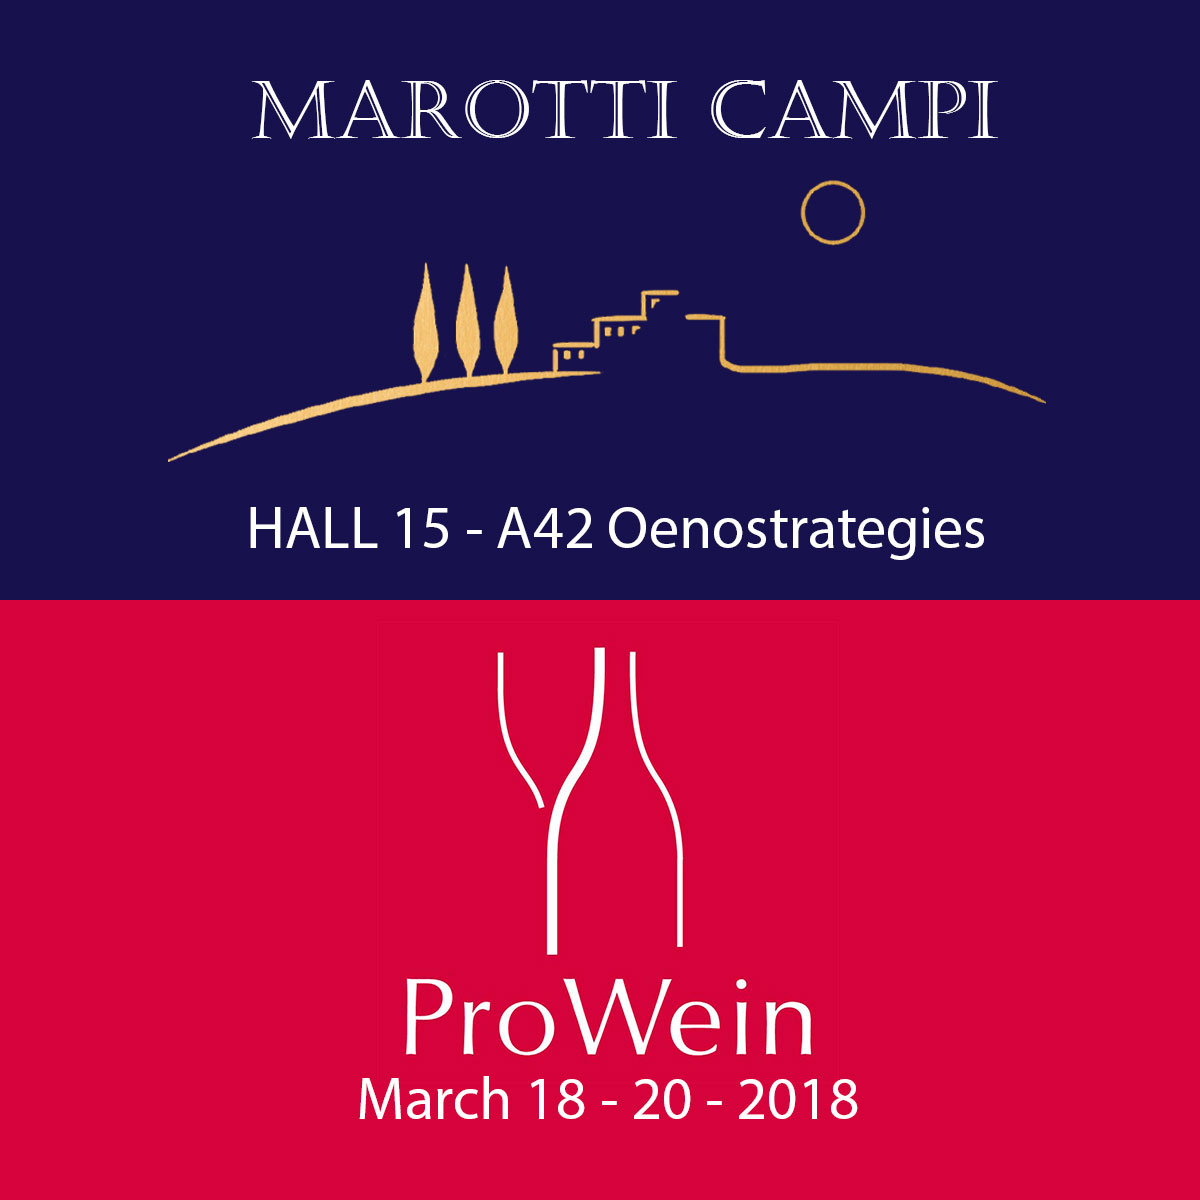 Marotti-Campi-Lacrima-Verdicchio-Prowein-2018-Hall-15-A42